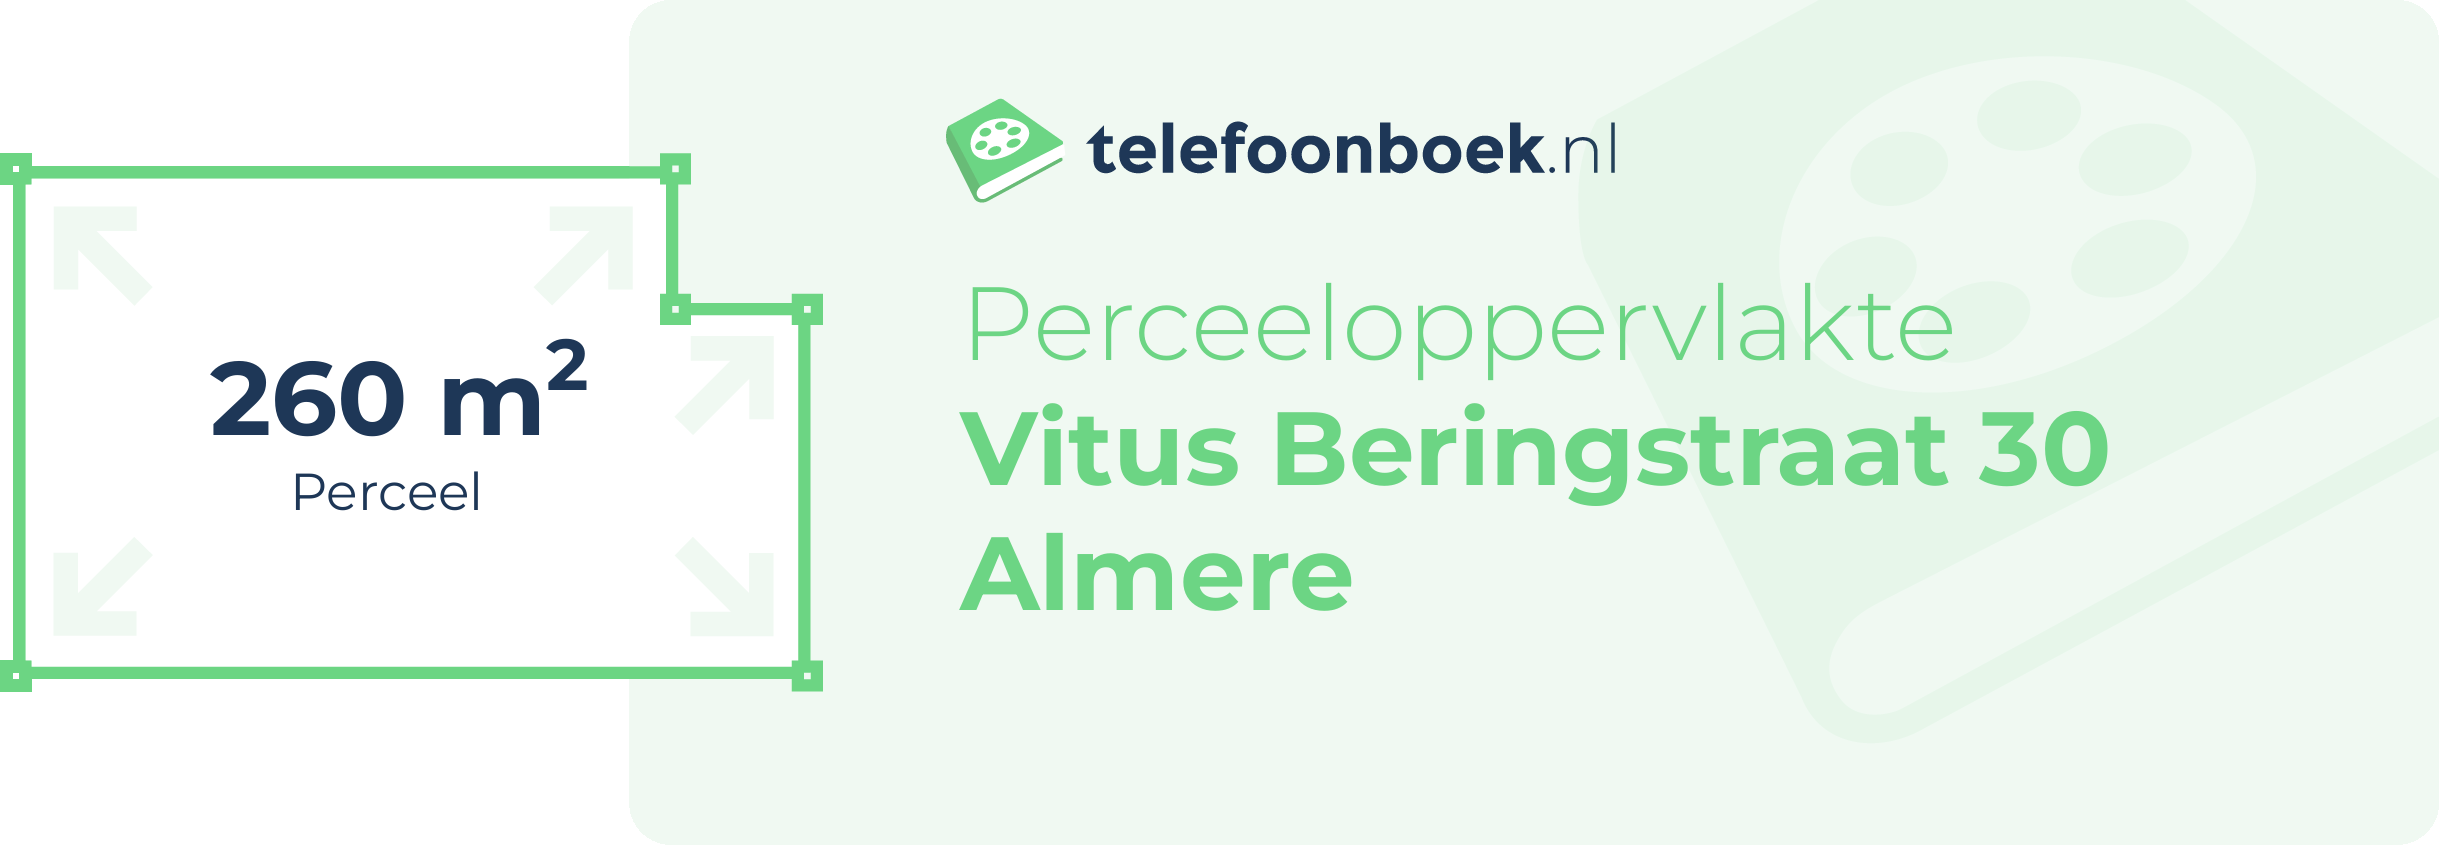 Perceeloppervlakte Vitus Beringstraat 30 Almere